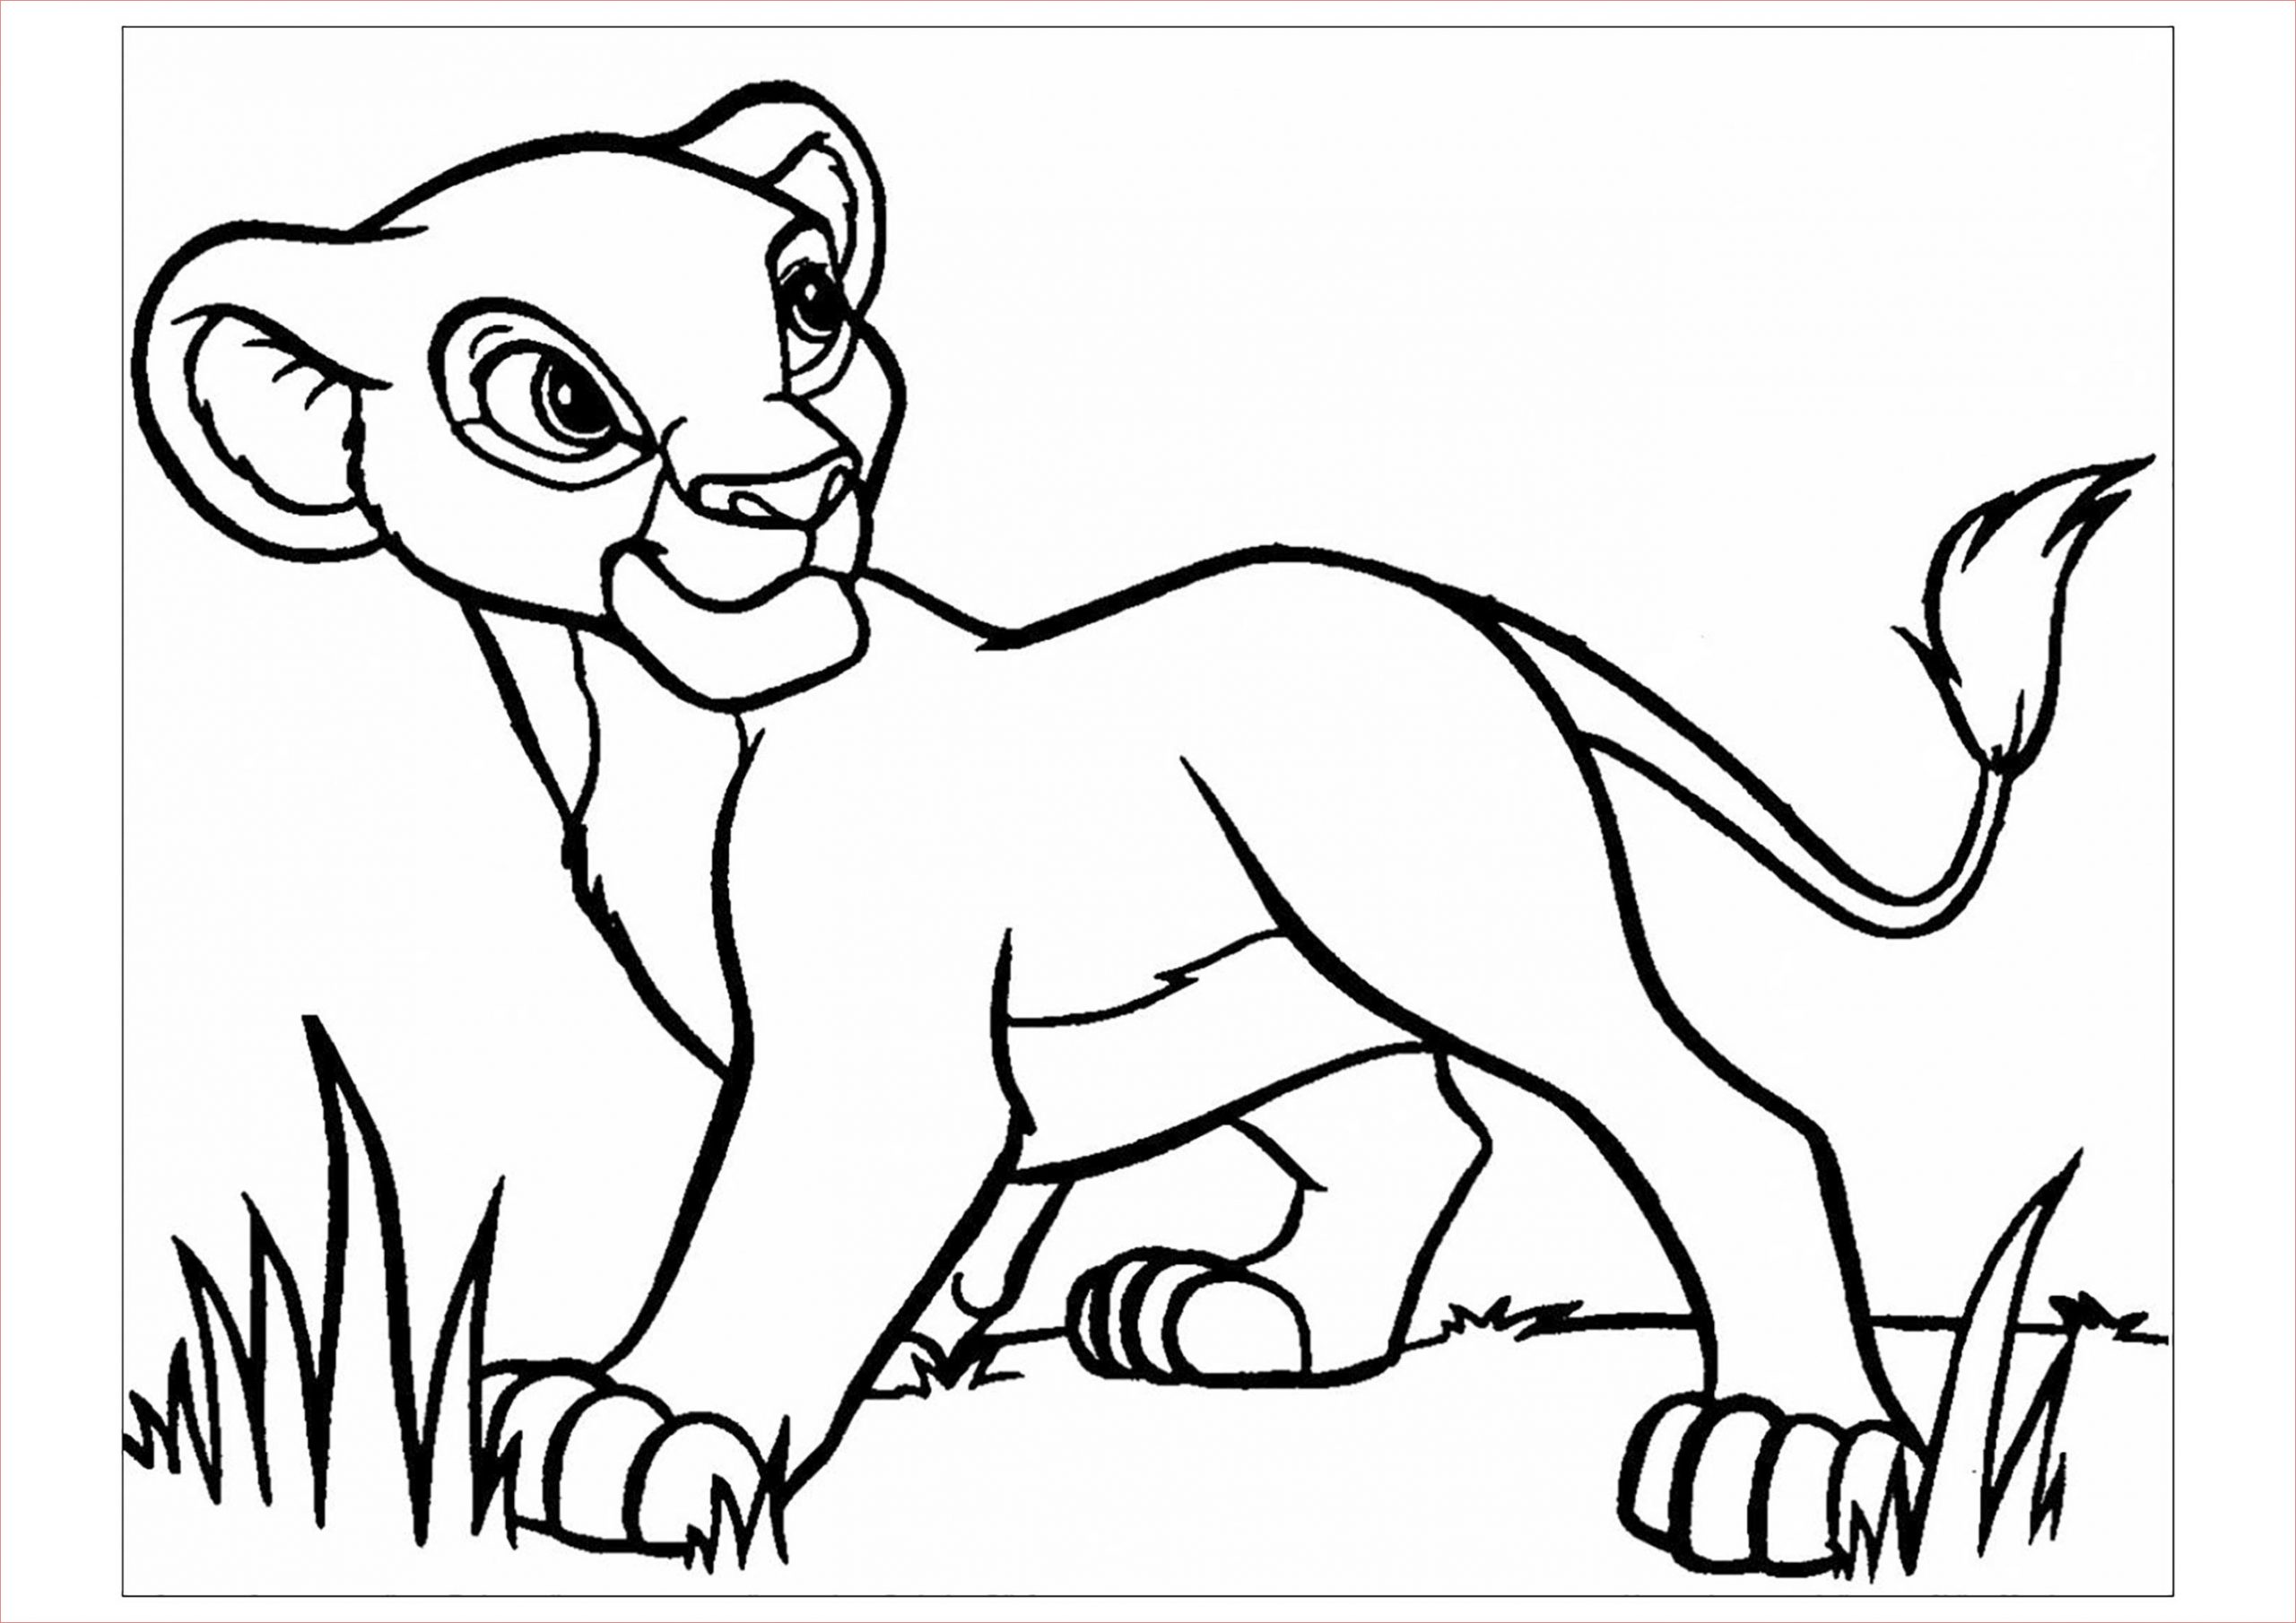 coloriage le roi lion